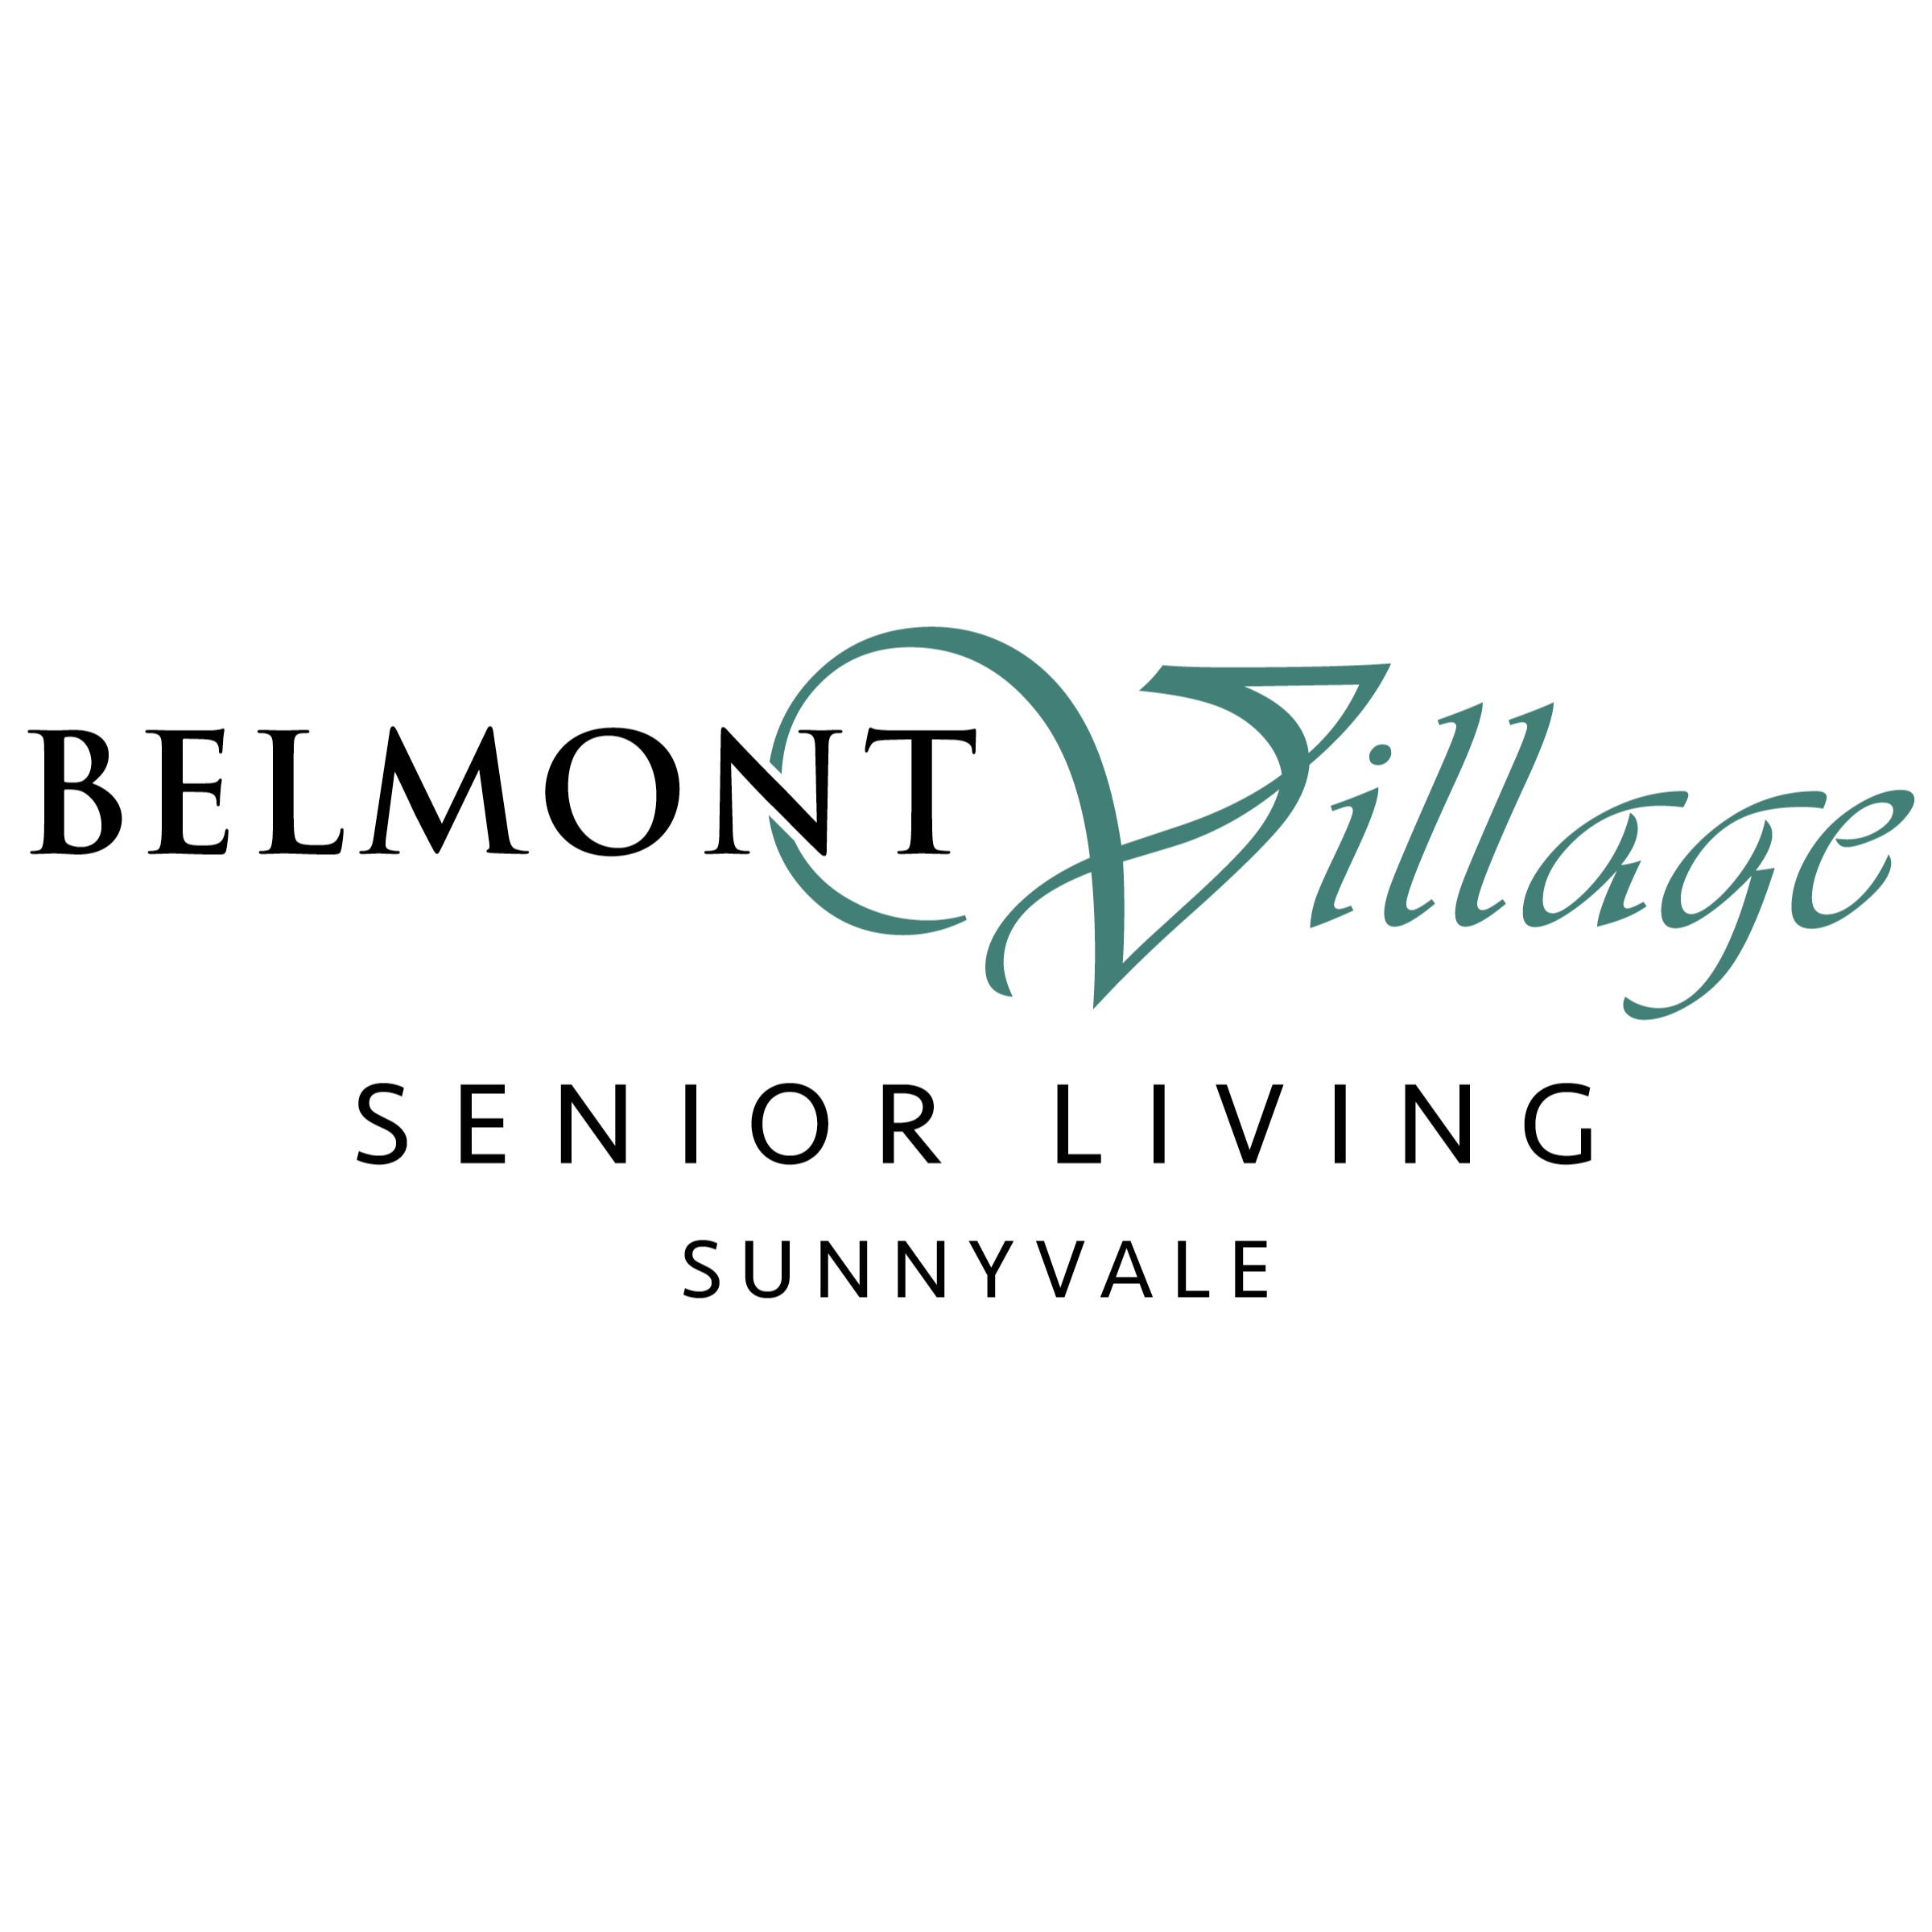 Belmont Village Senior Living Sunnyvale Logo